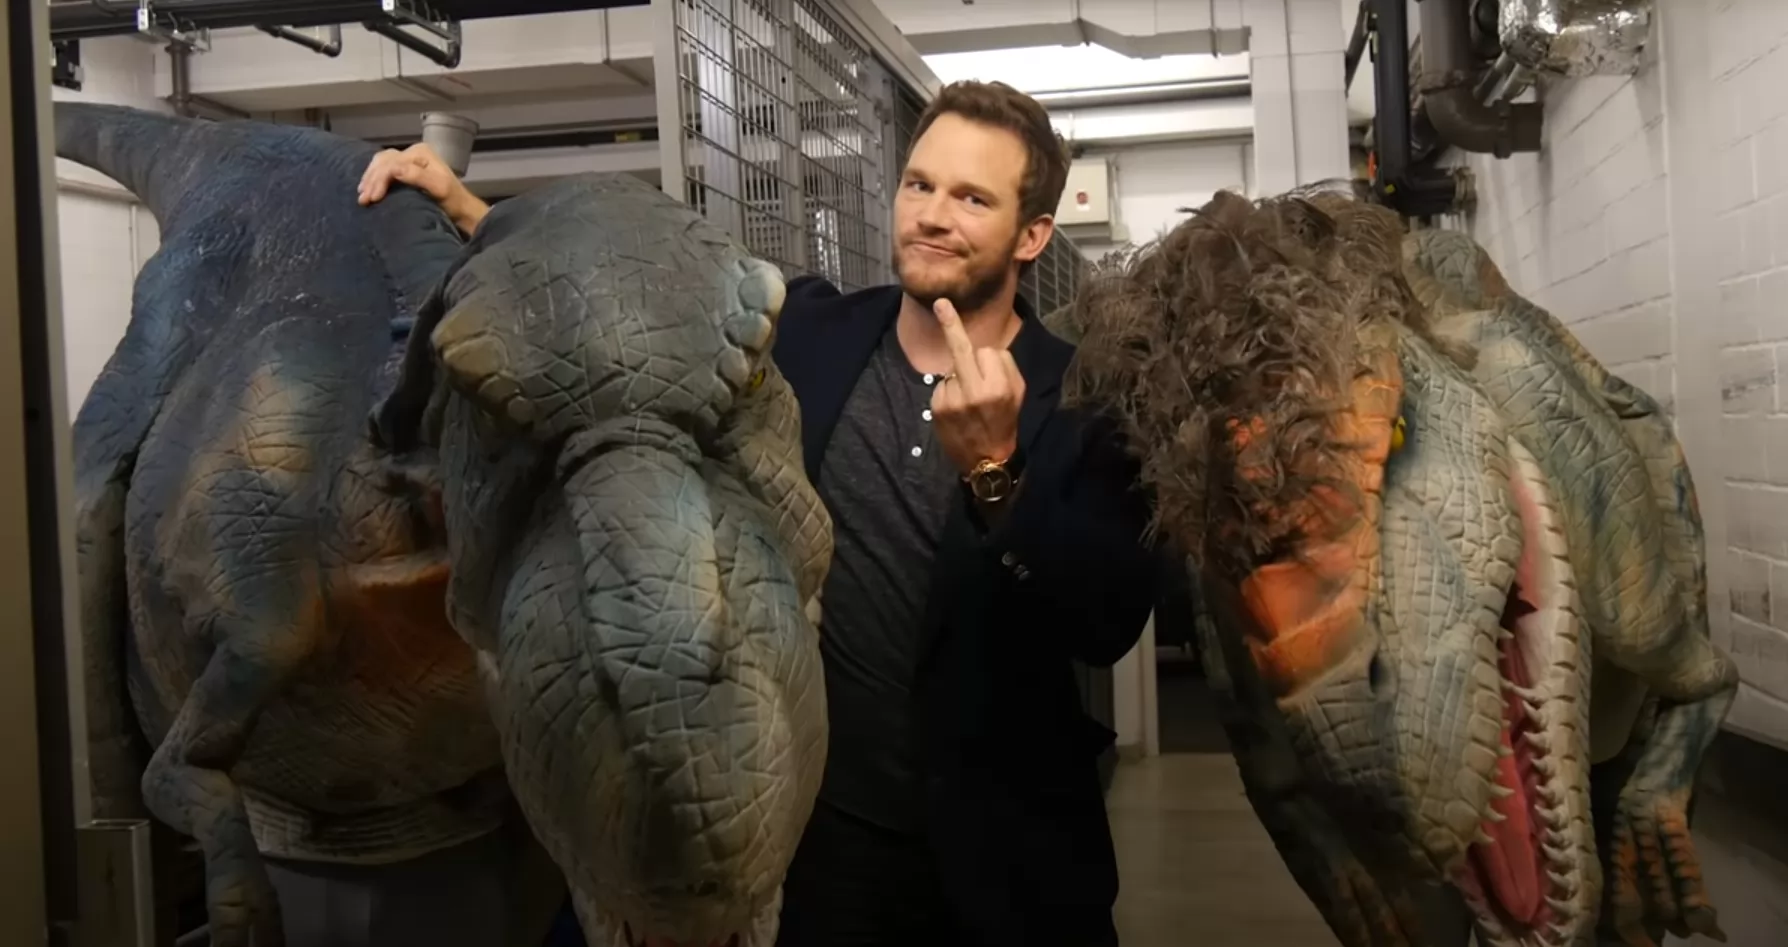 Криса Прэта испугали кукольными динозаврами